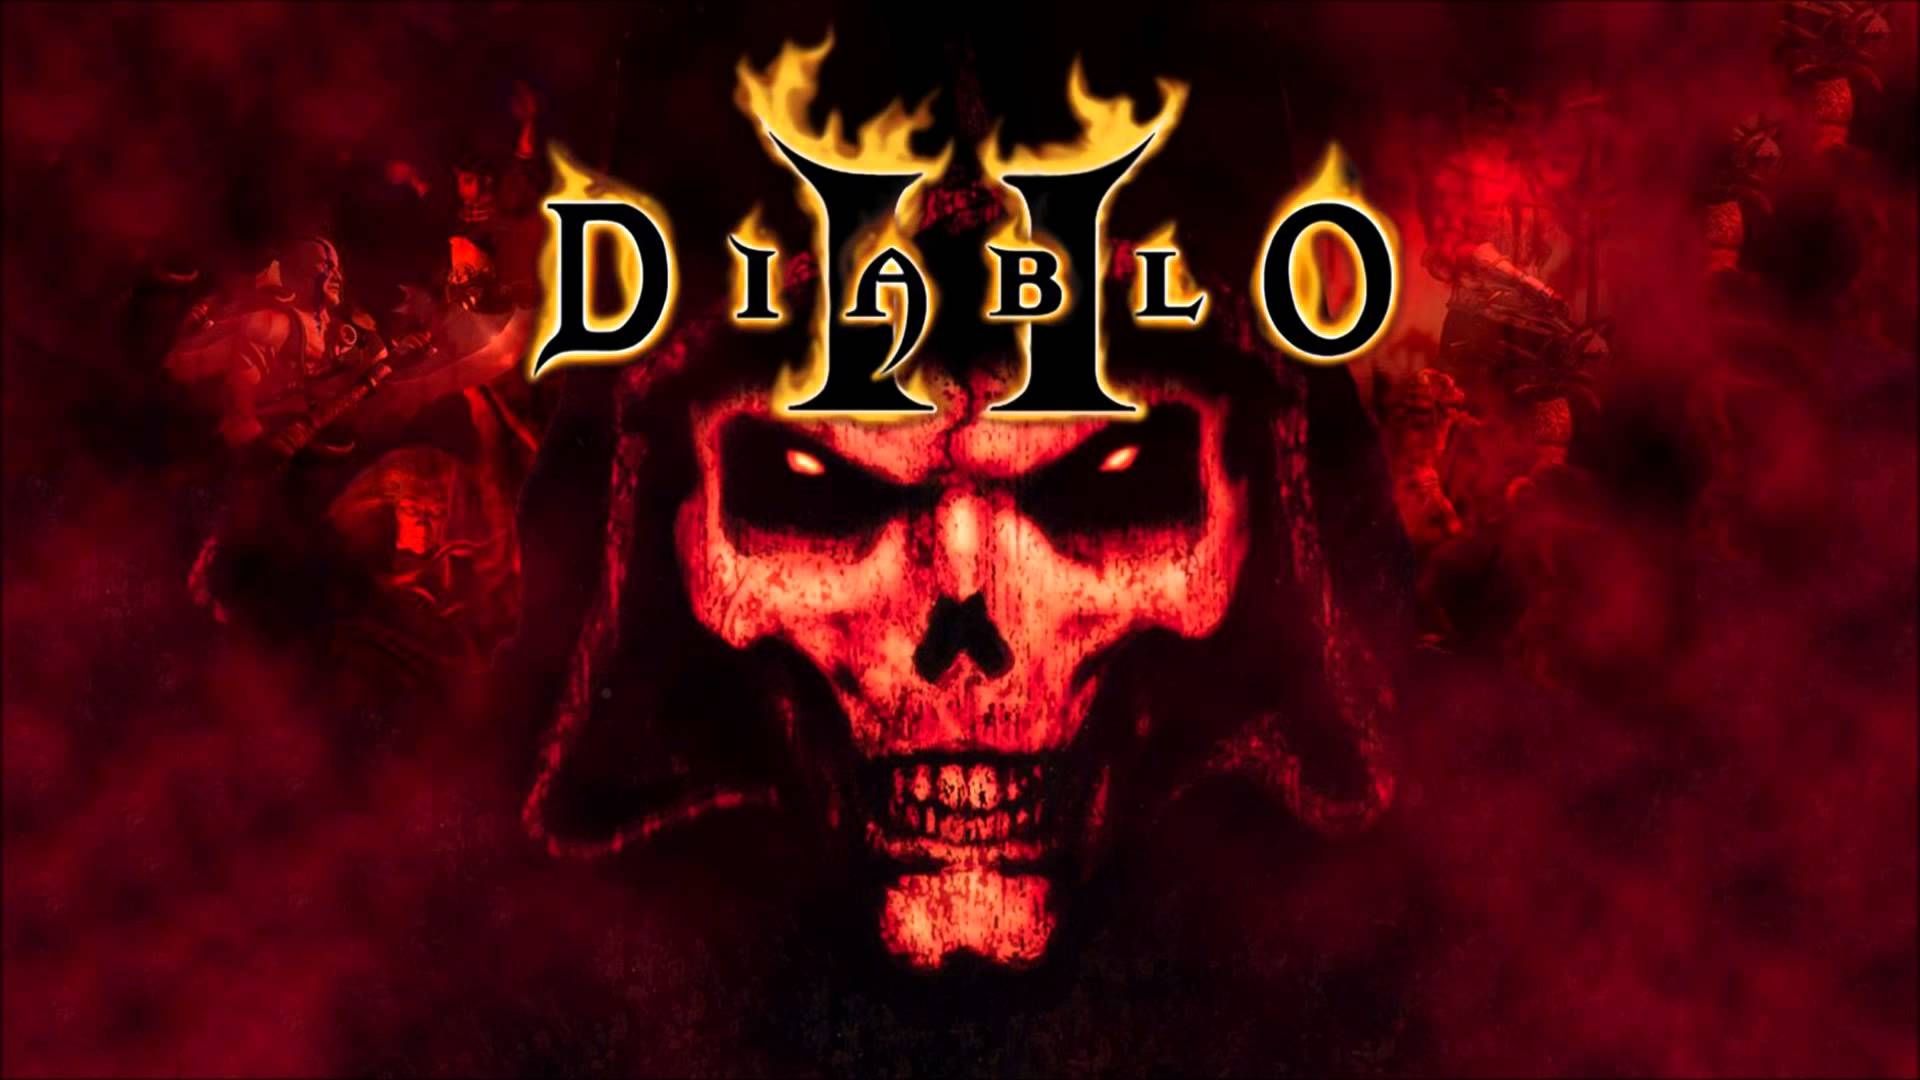 Diablo ii, Diablo 2, Diablo 2 Resurrected, Diablo Prime Evil Collection